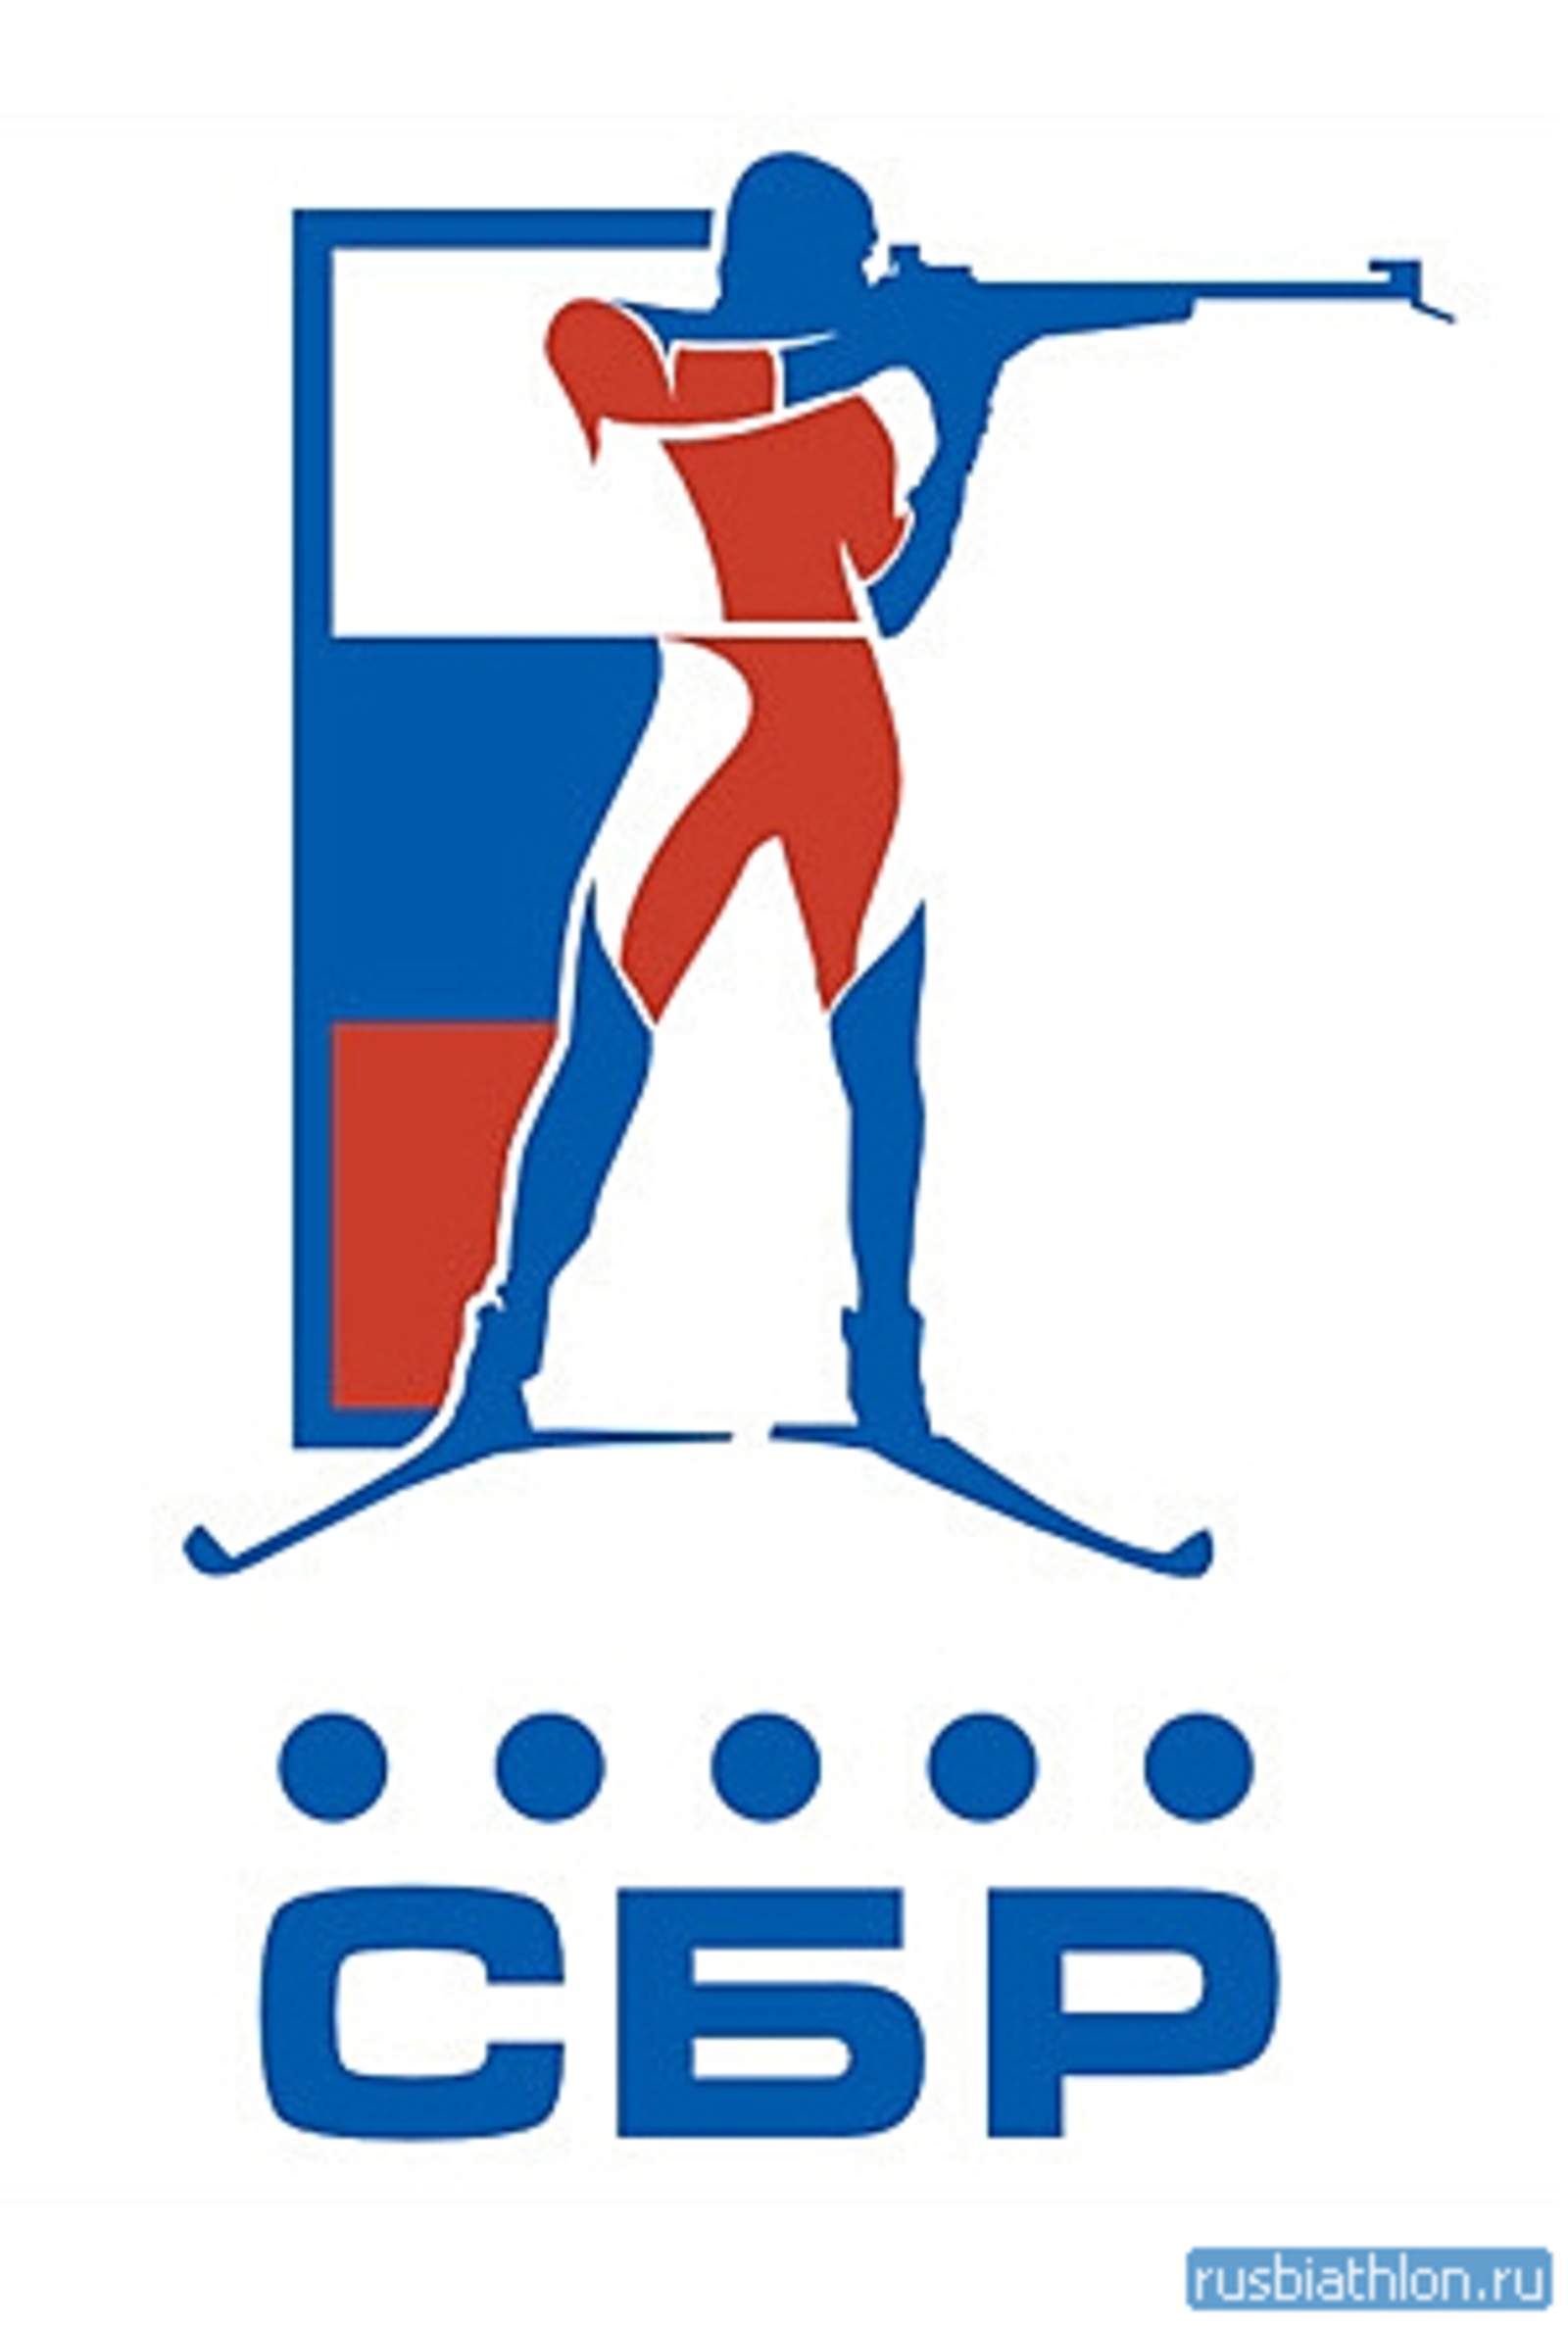 В Уфе пройдет заключительный этап Кубка России и Чемпионат России по биатлону